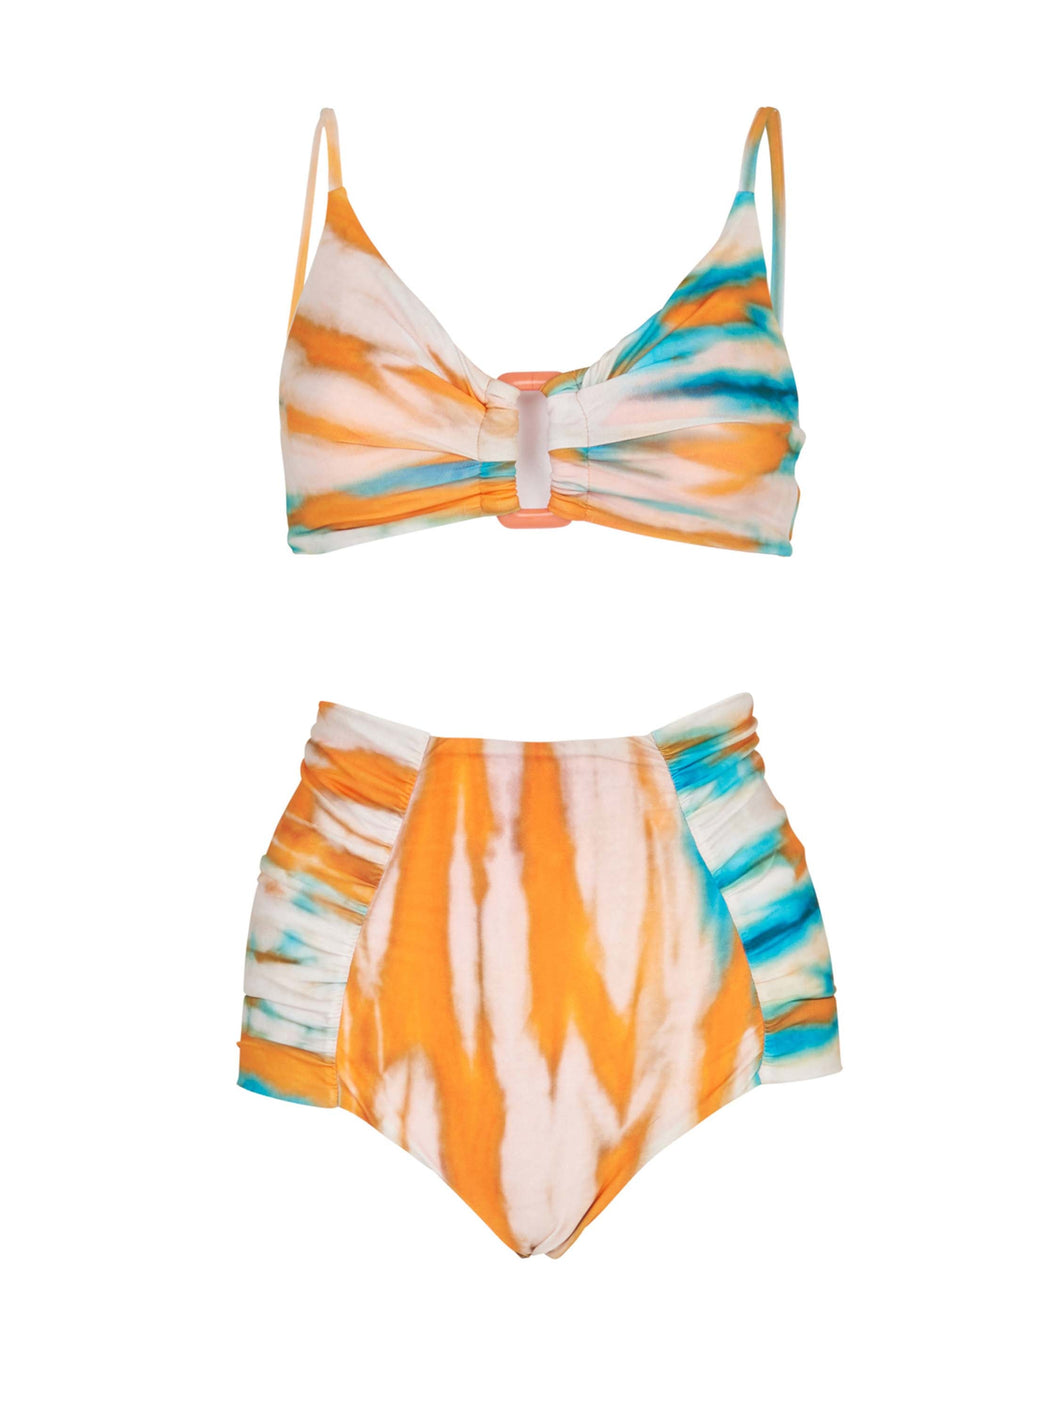 Fern Top + Hilaria Bikini Orange/Turquoise